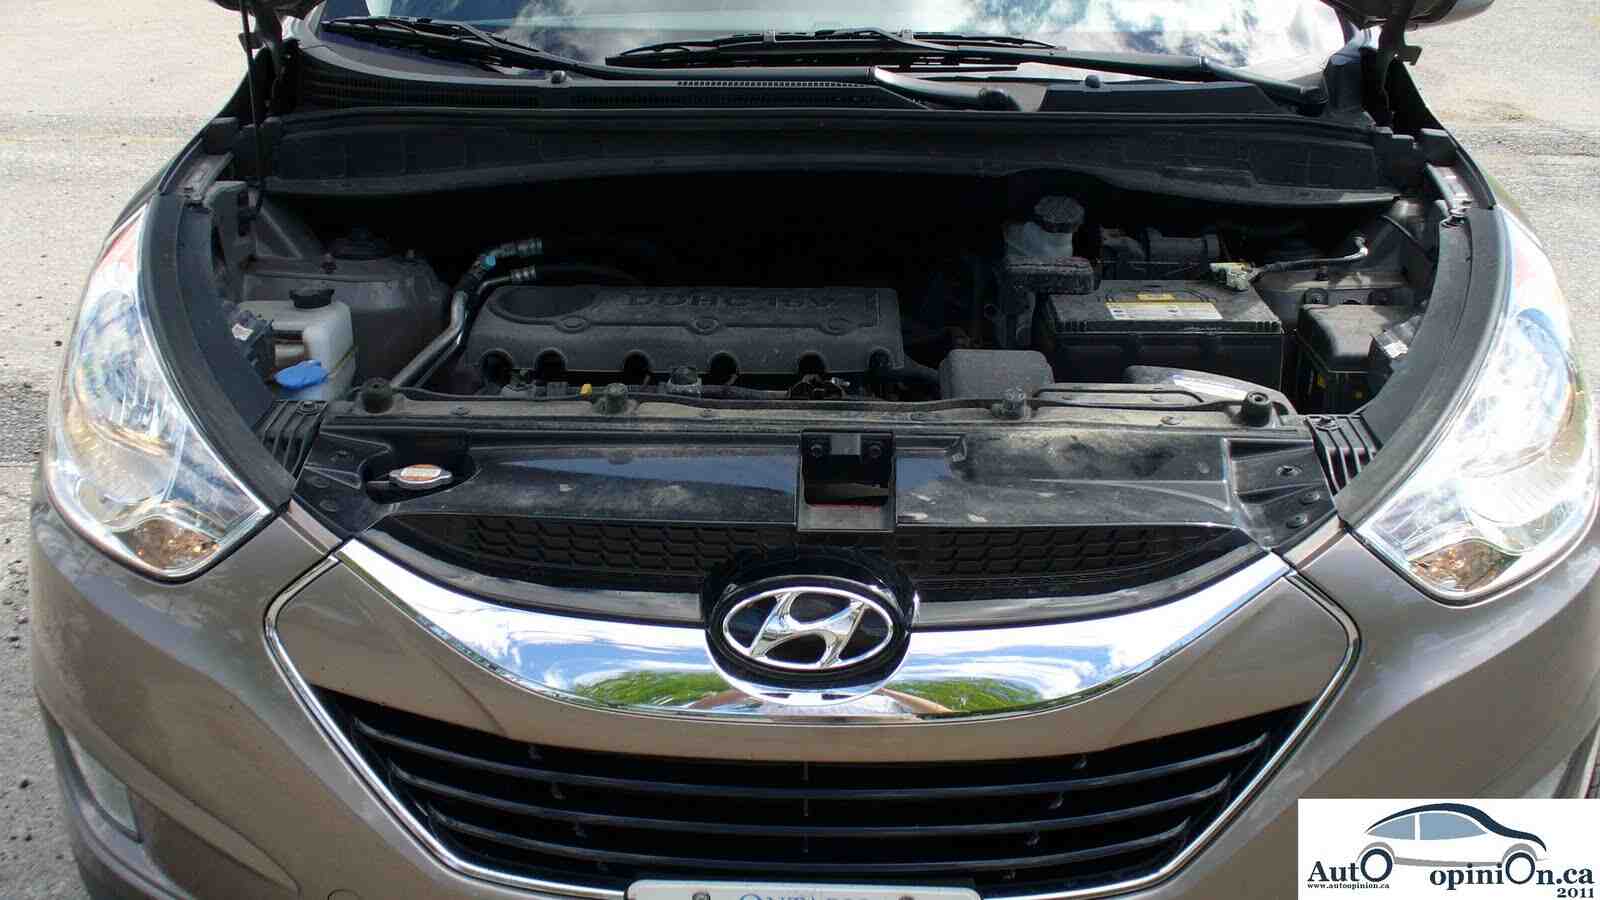 Quand remplacer la courroie de distribution Hyundai Tucson?